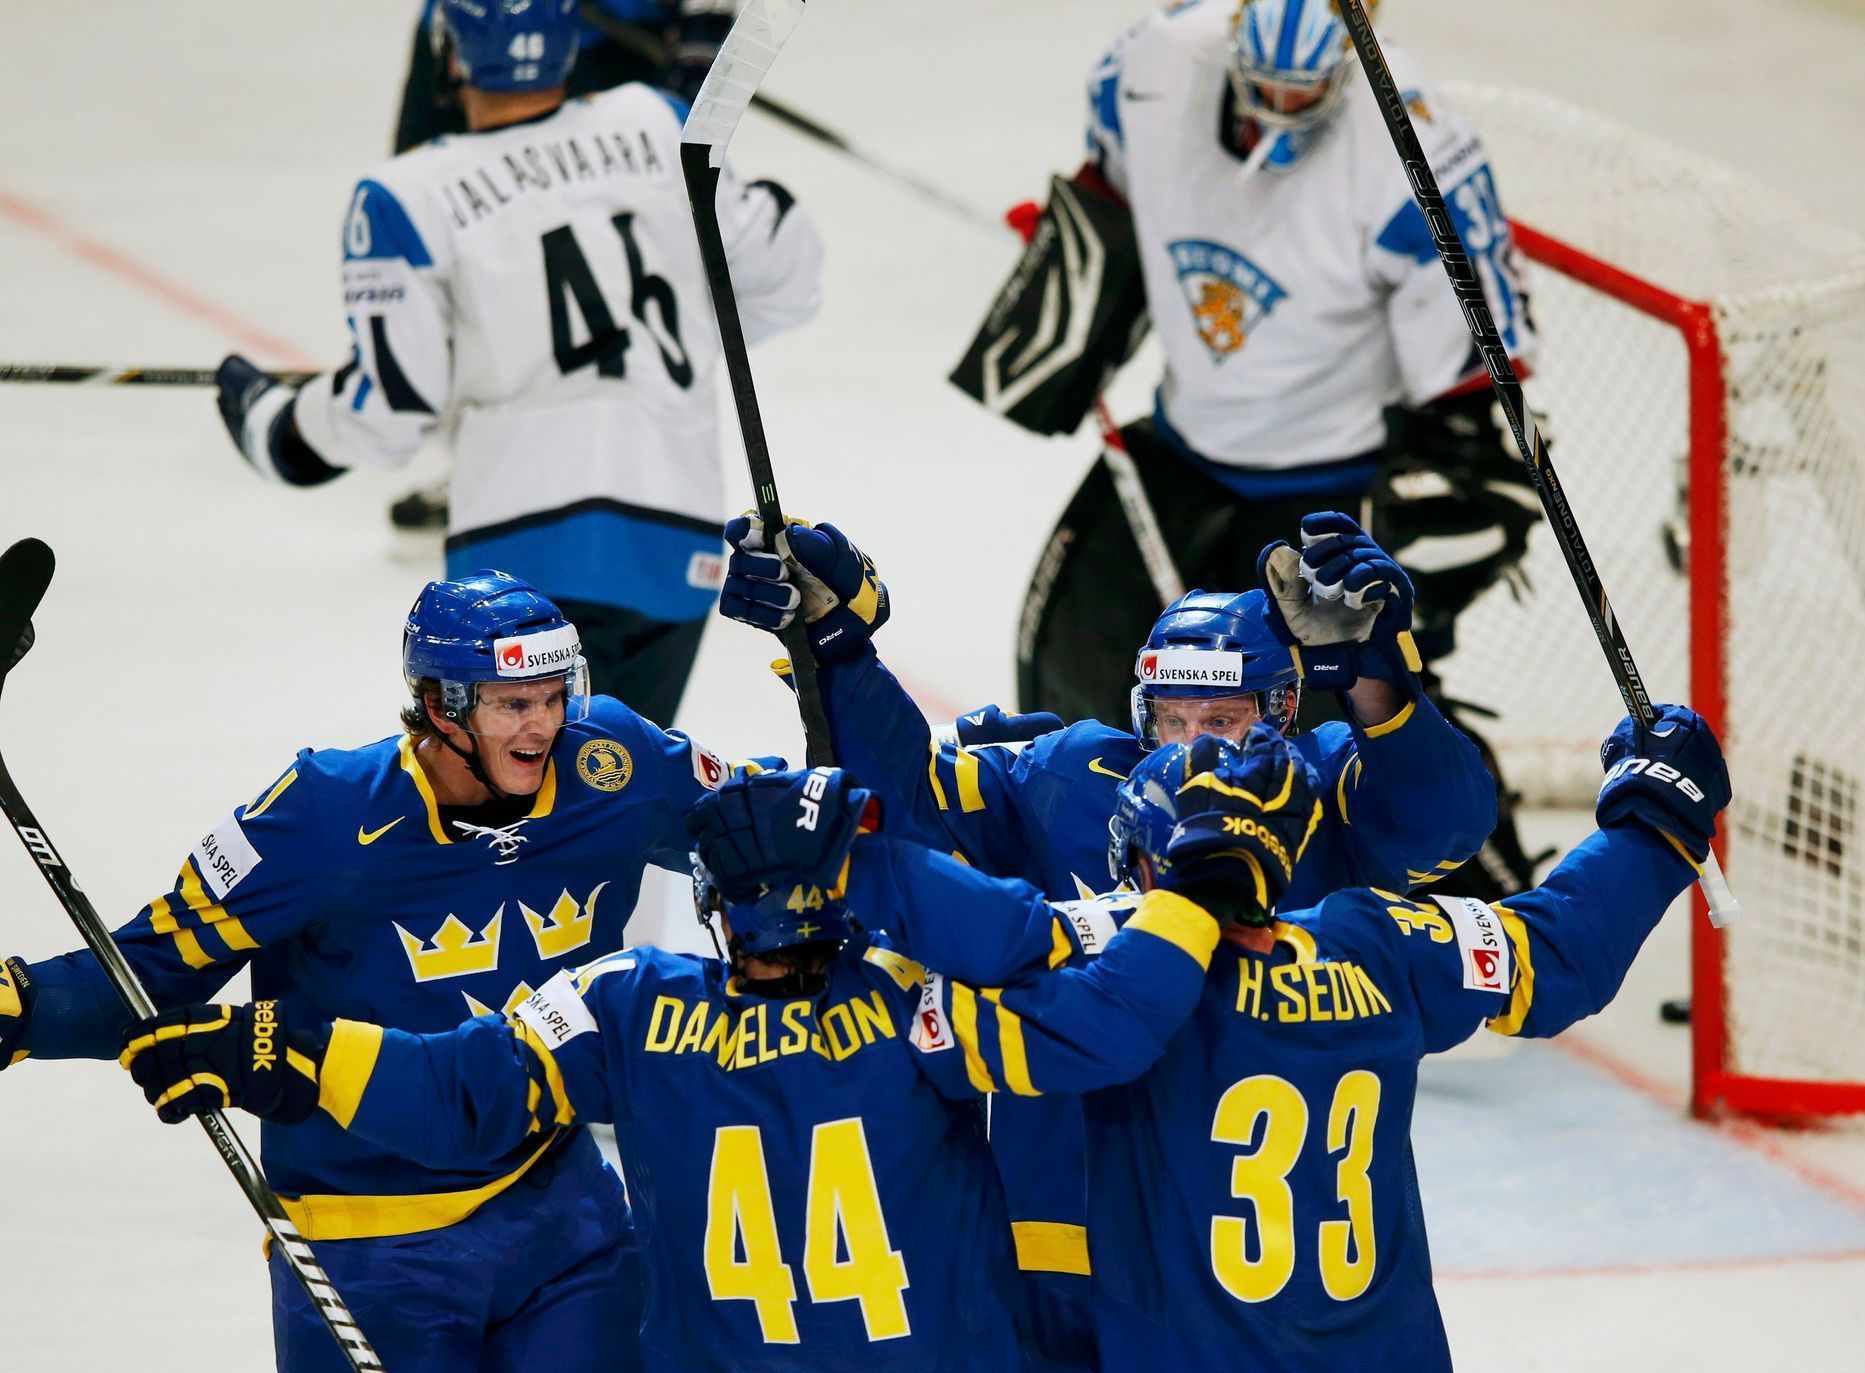 Hokej, MS 2013, Švédsko - Finsko: švédové slaví gól na 1:0